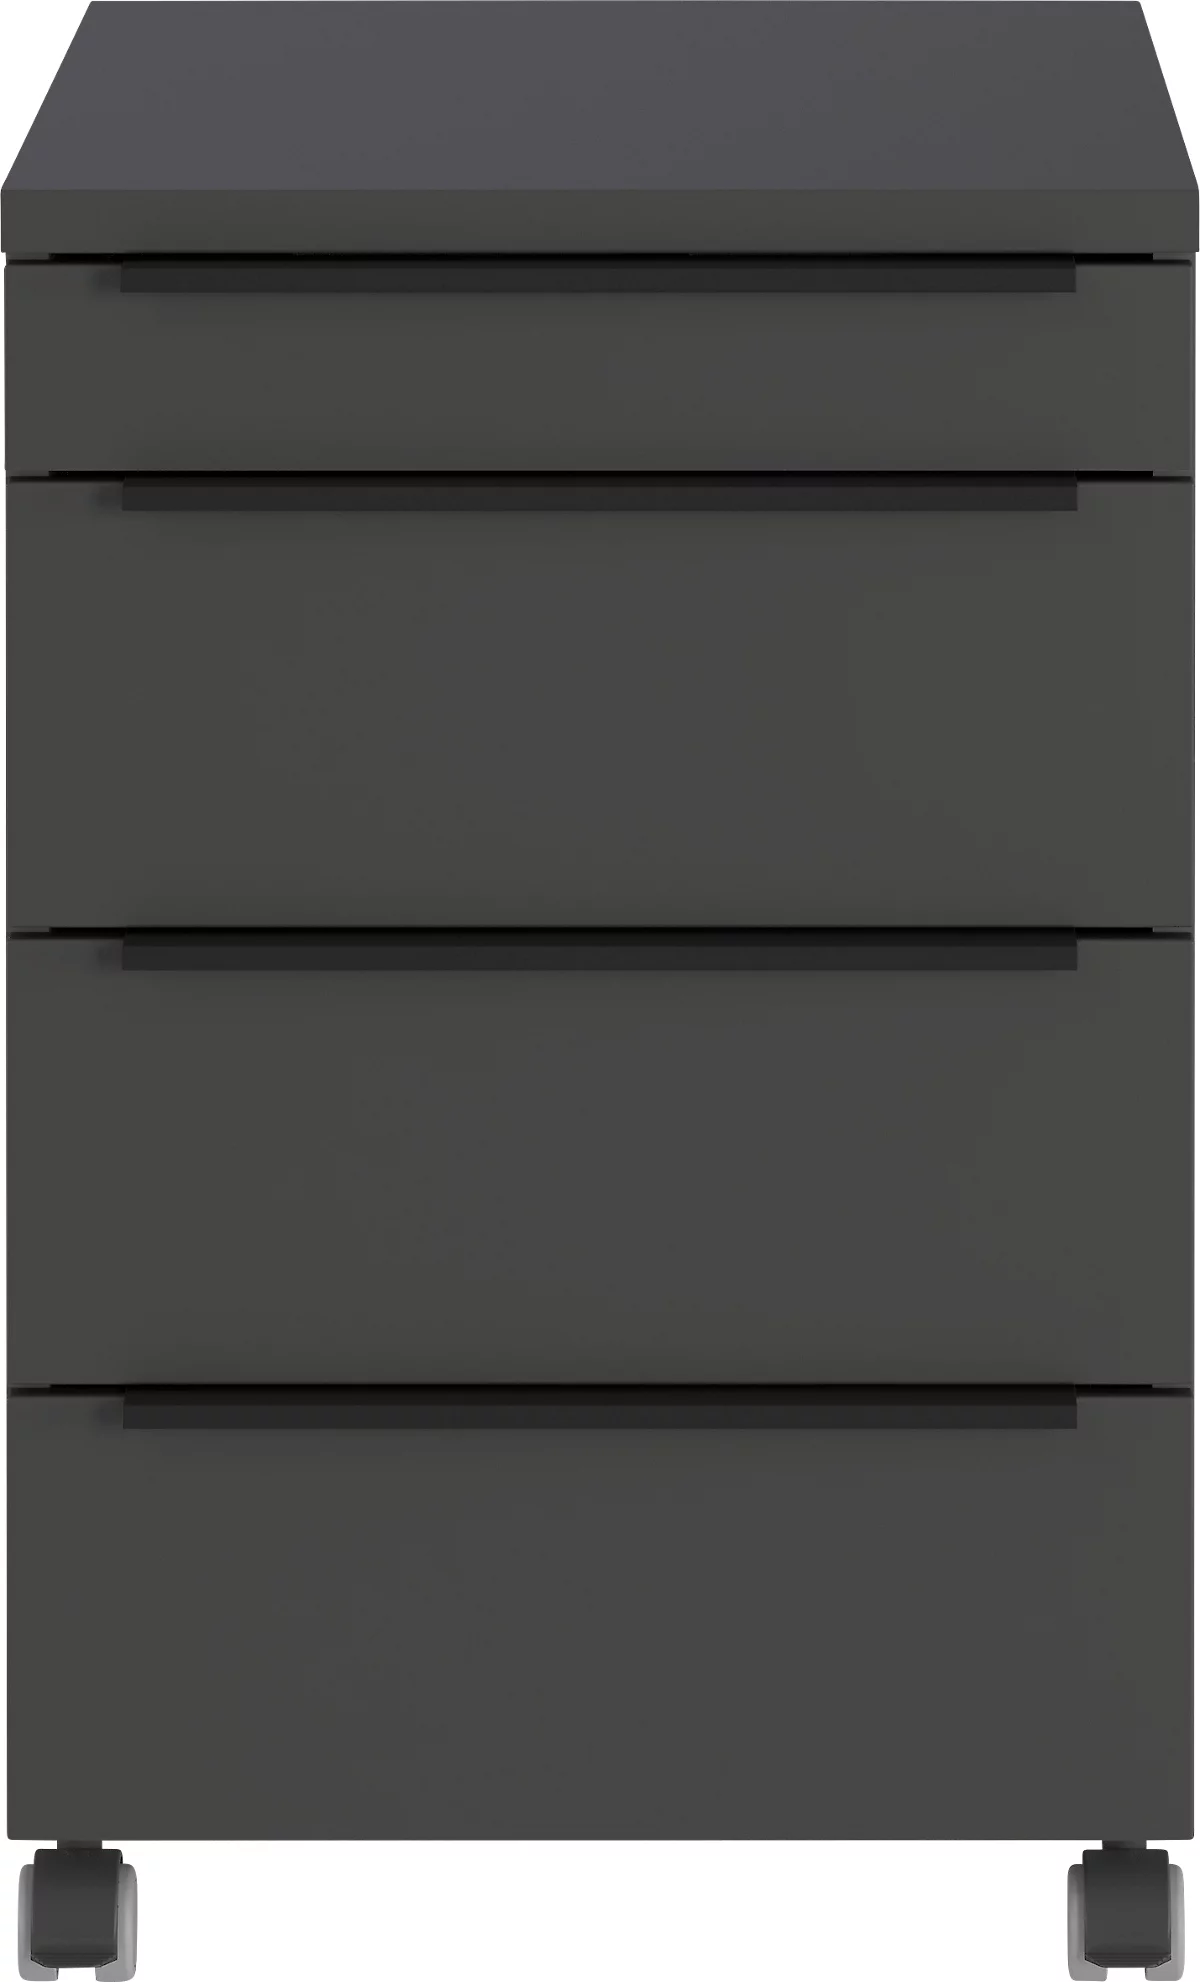 Rollcontainer Porto, 4 Schubladen inkl. Utensilienfach und 1 abschließbaren Schublade, B 420 x T 600 x H 630 mm, graphit